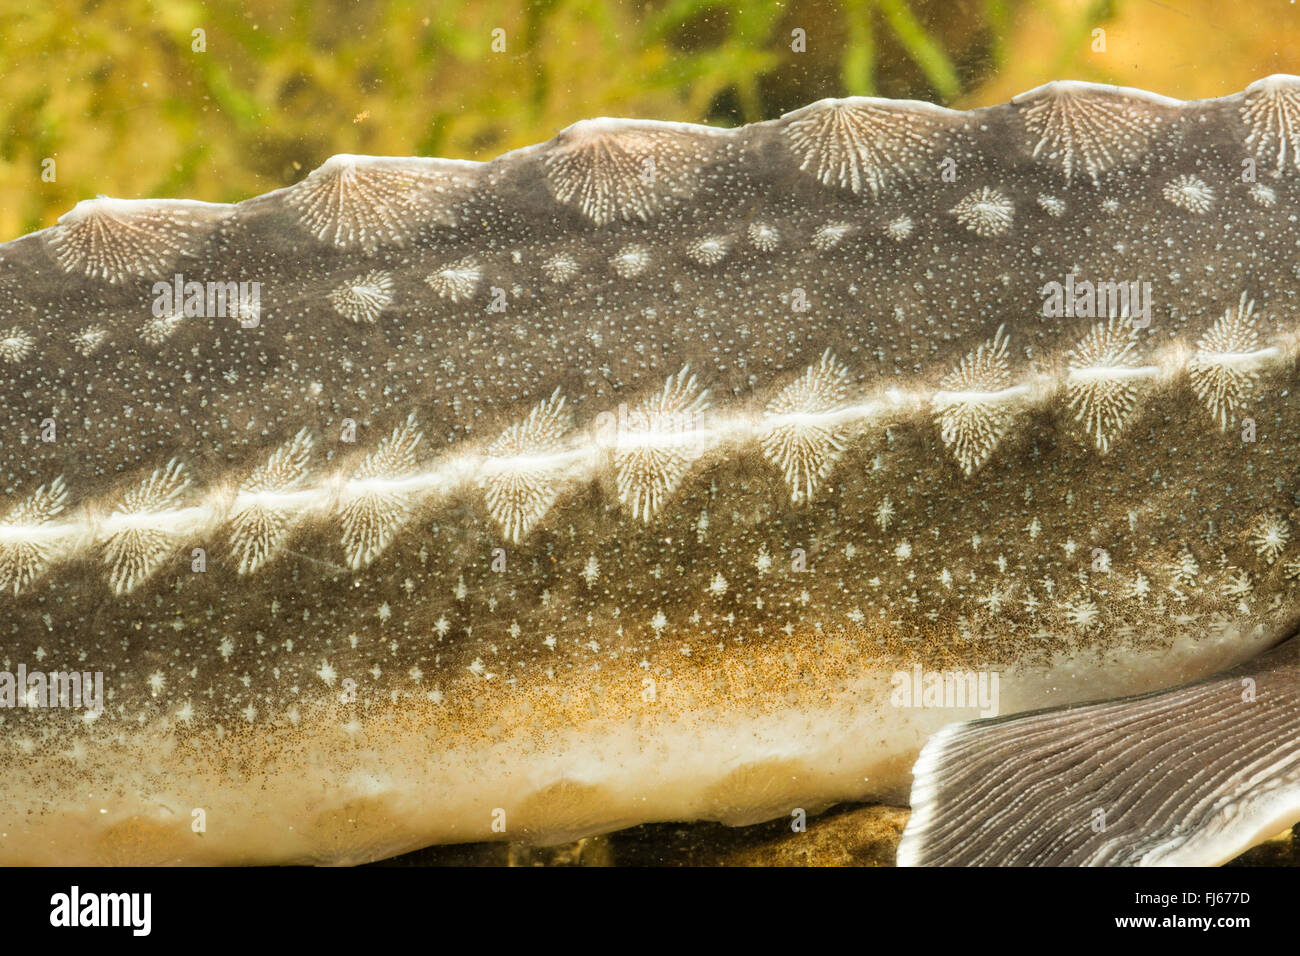 Russian sturgeon (Acipenser gueldenstaedtii, Acipenser gueldenstaedti), detail, bone plates Stock Photo